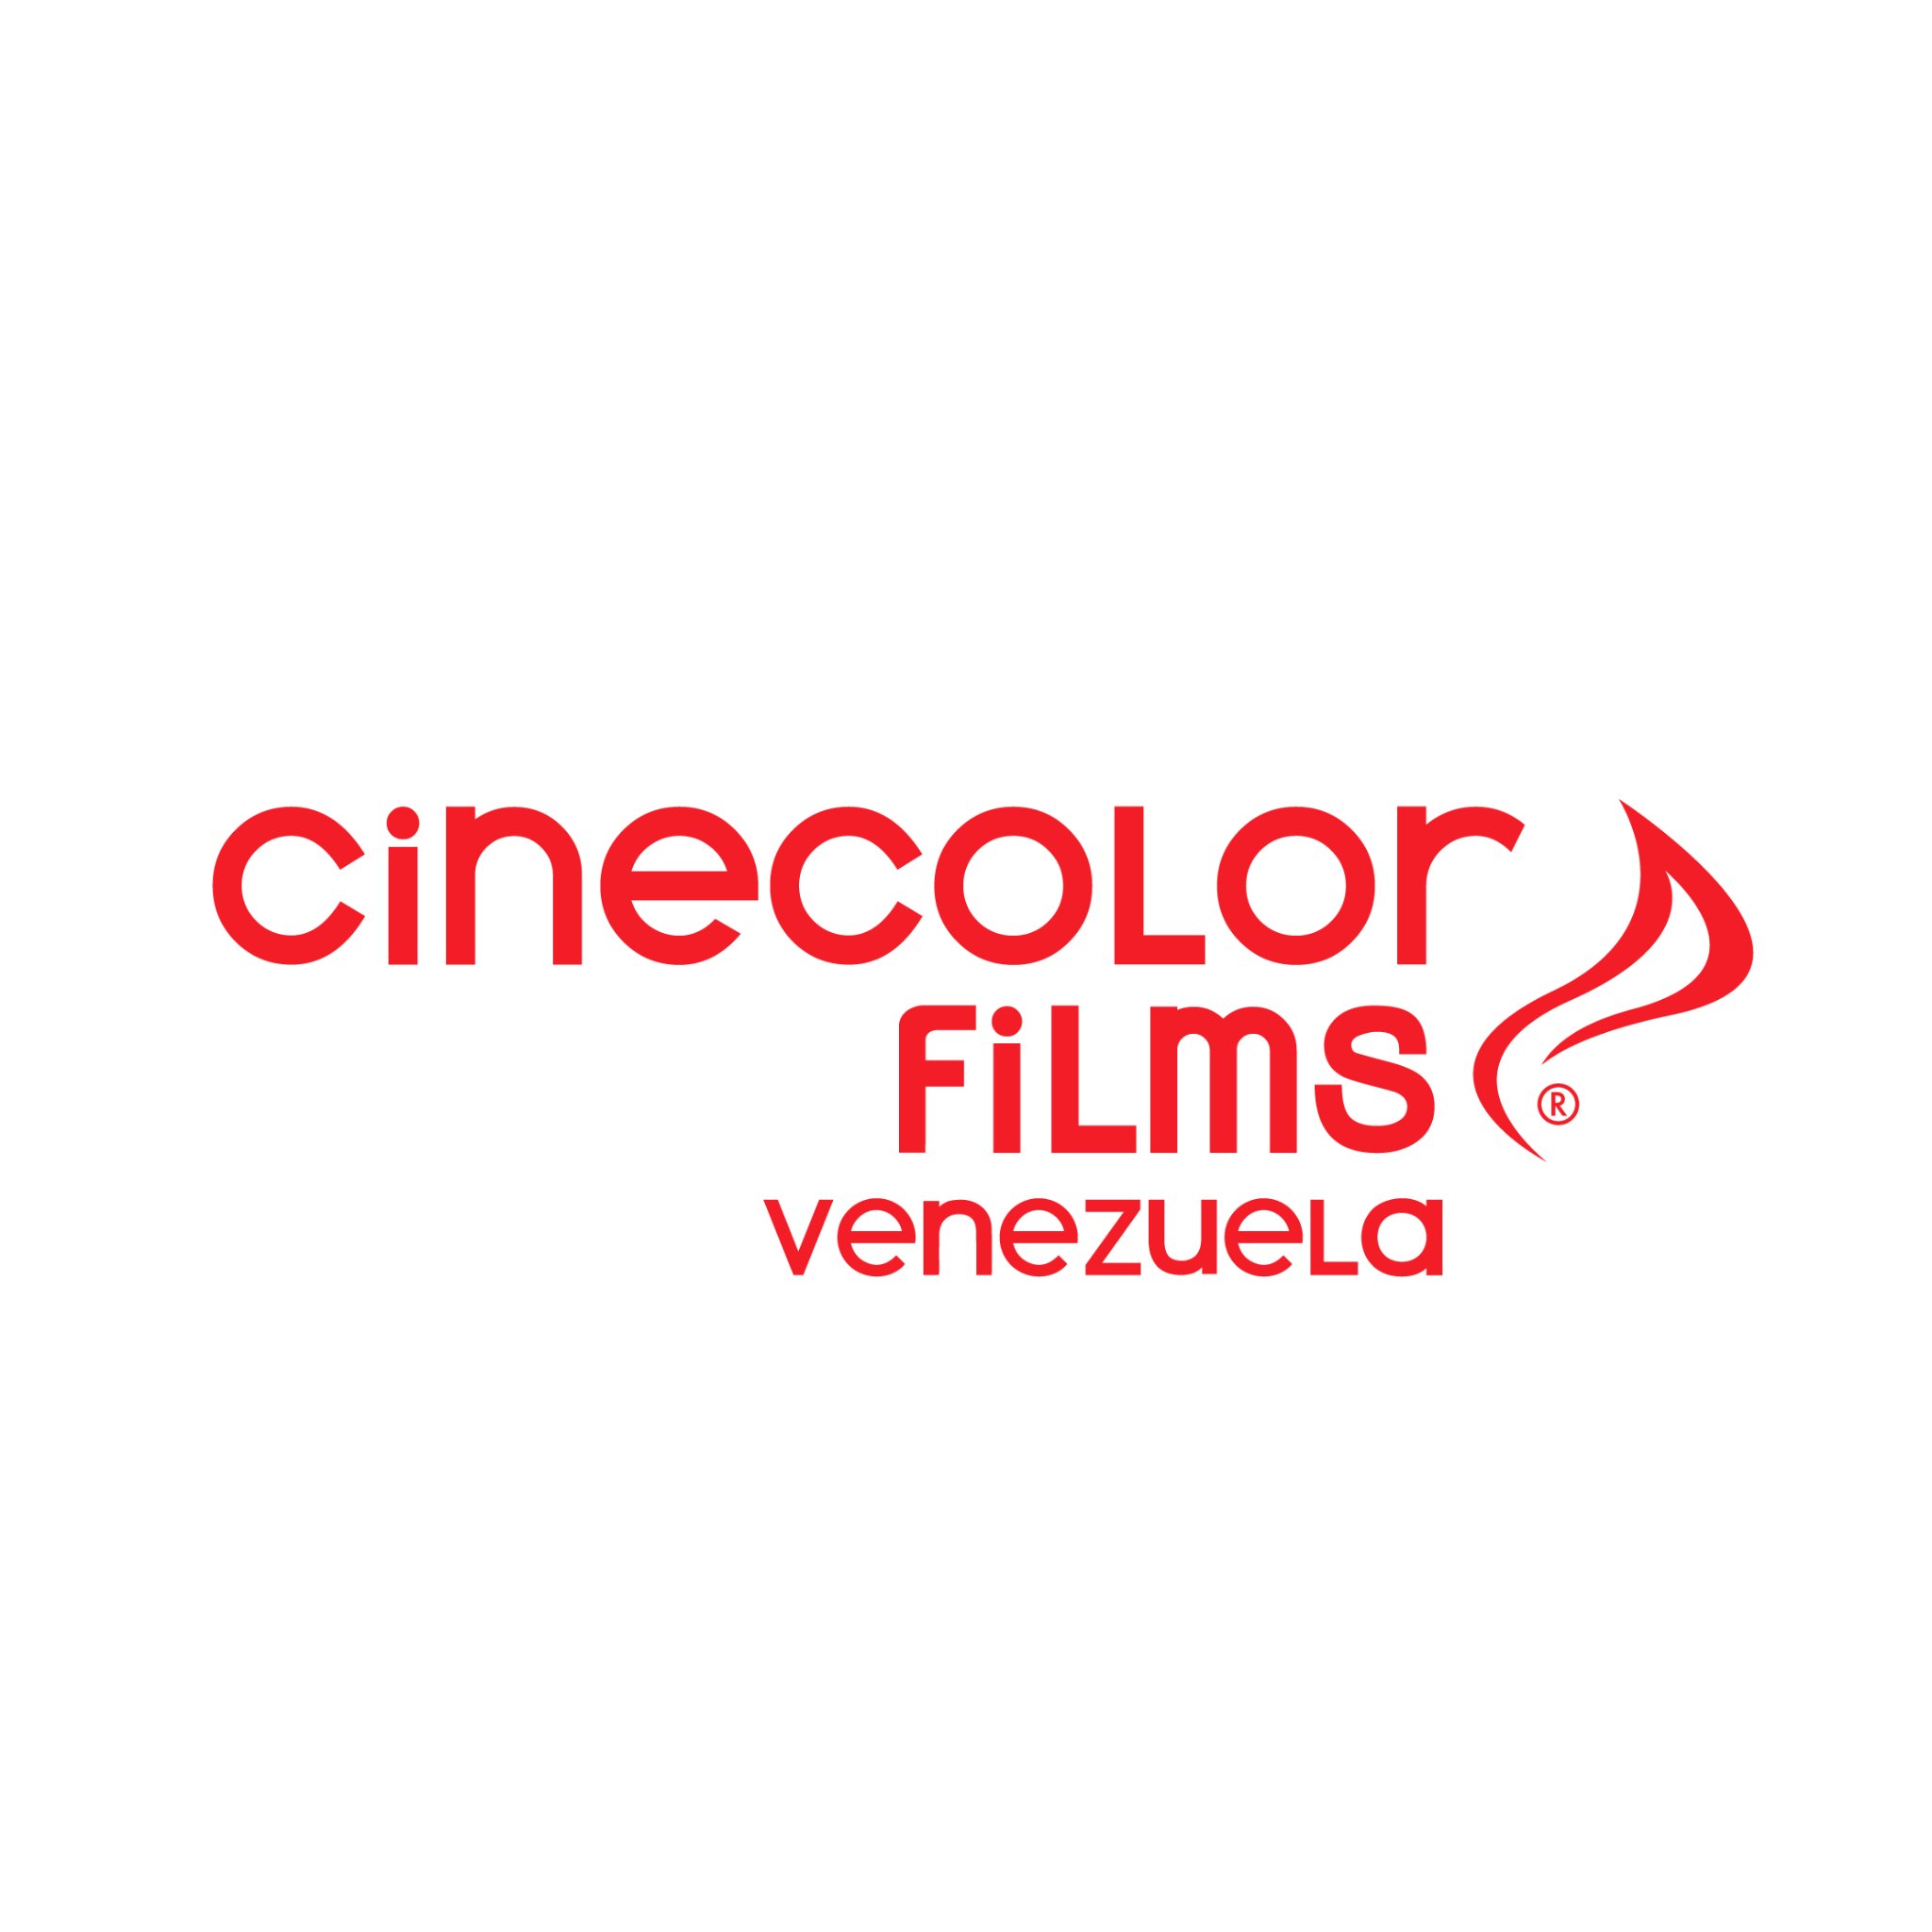 Distribuidor oficial en Venezuela de películas de los estudios cinematográficos Disney, Pixar, Marvel, Lucasfilm, Paramount, 20thCenturyStudios e independientes